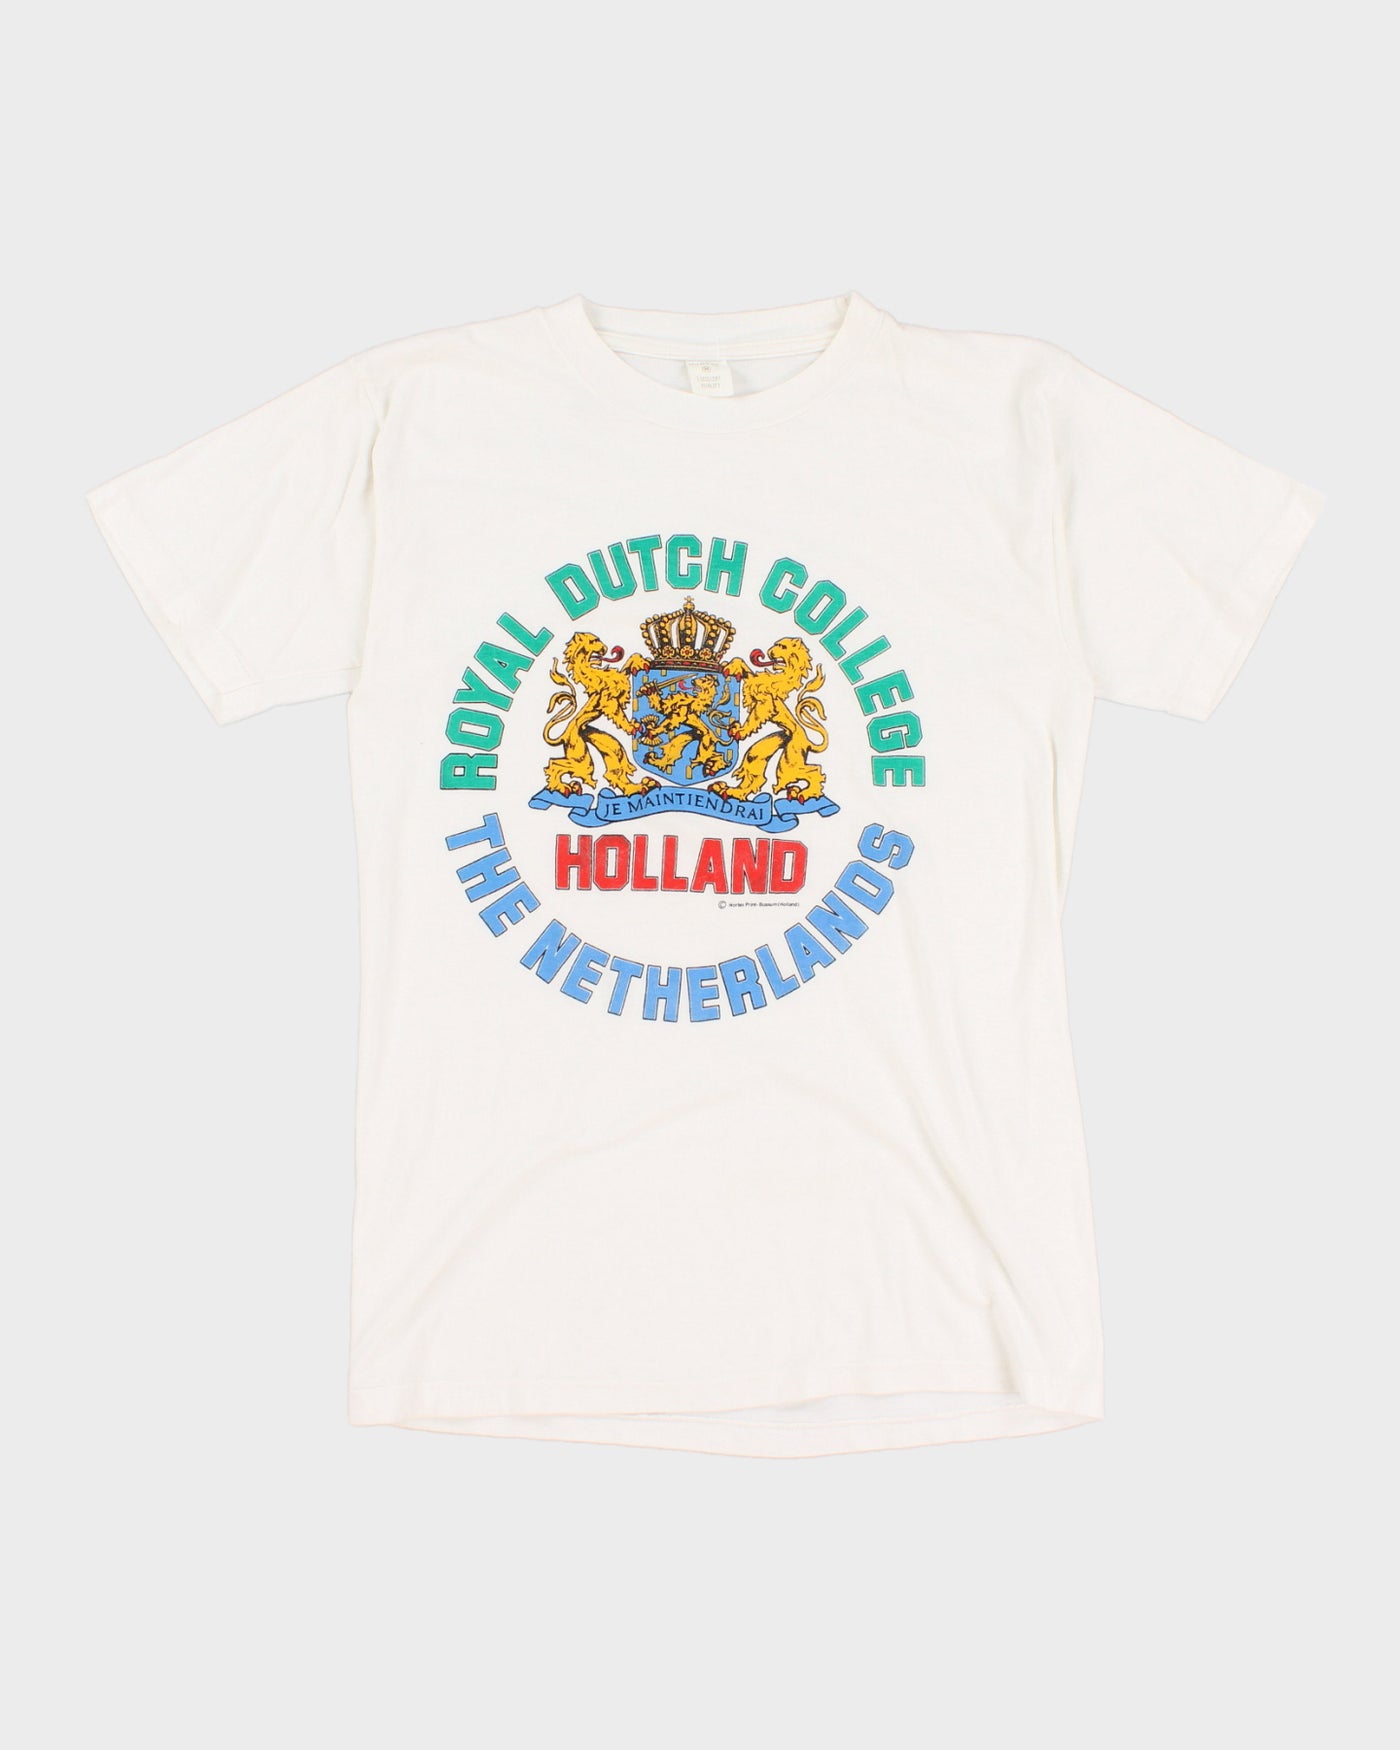 Vintage 90s Royal Dutch College Graphic T-Shirt - M